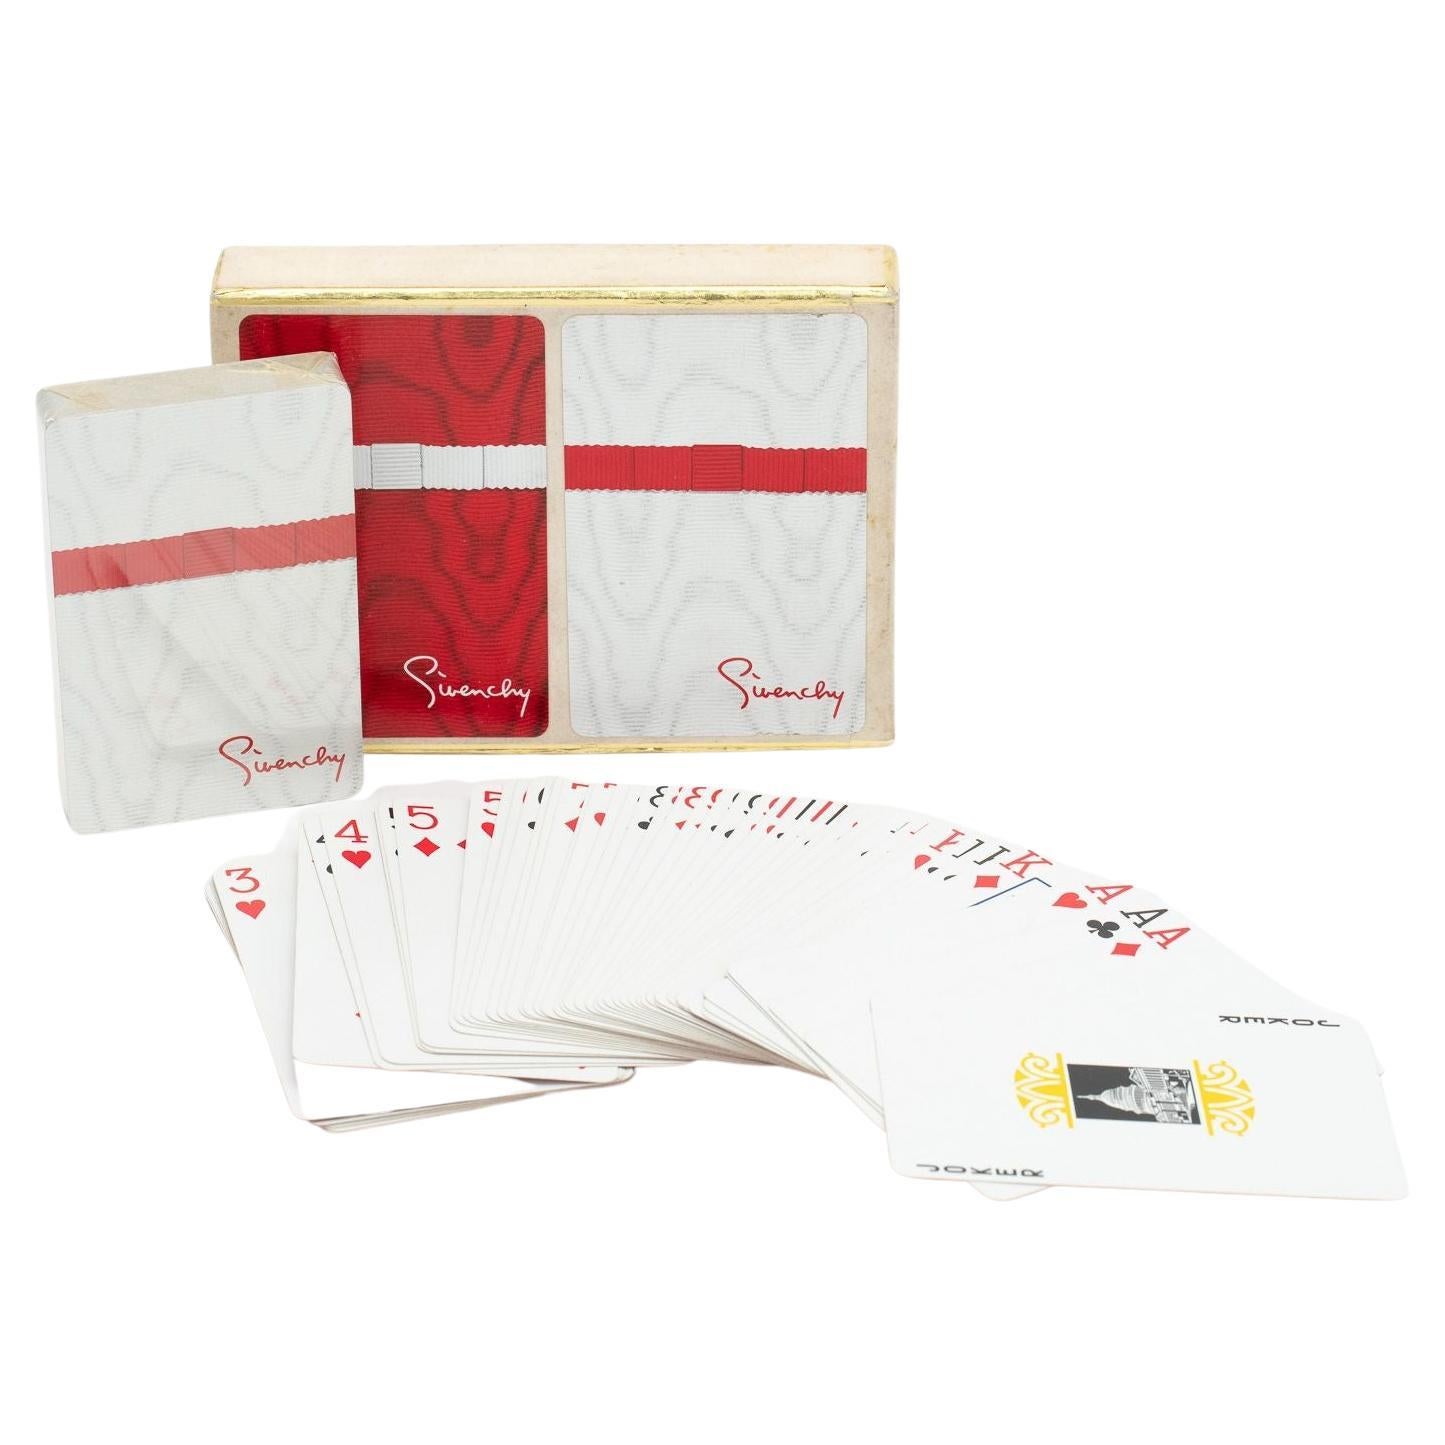 Givenchy Pokerkarten mit 2 Karten in Rot/Weiß